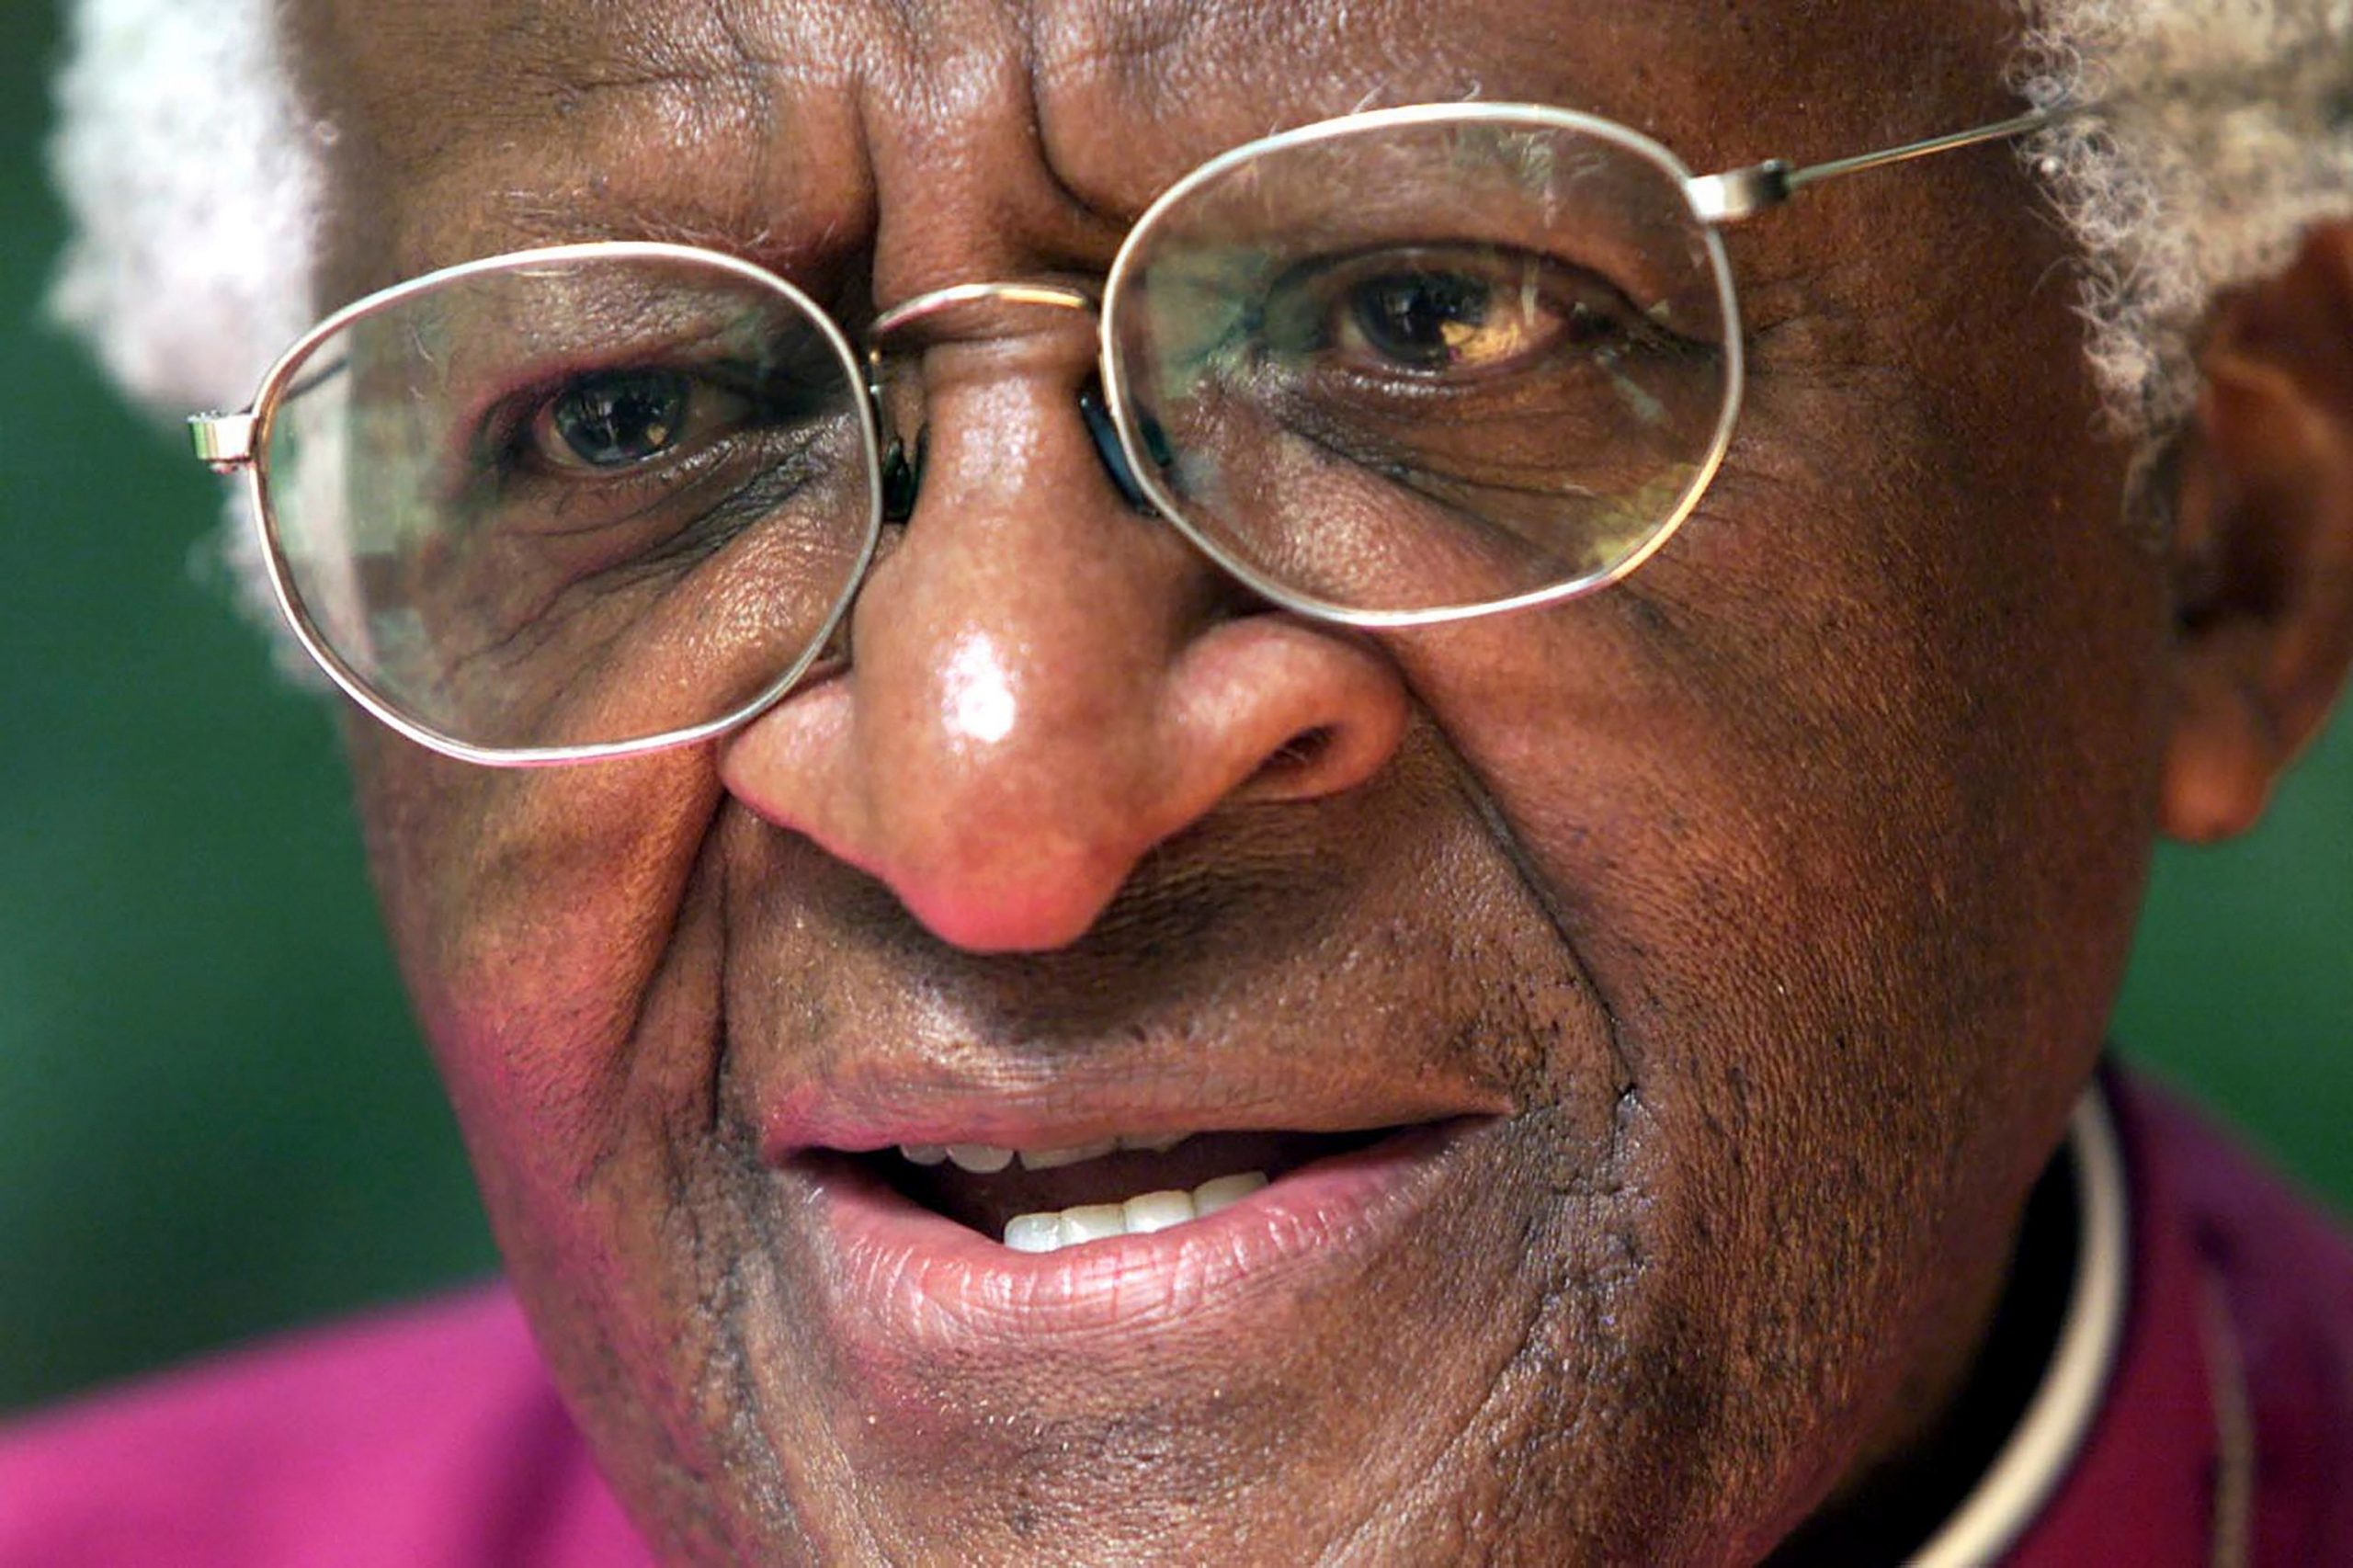 Desmond Tutu, South African anti-apartheid activist, dies at 90